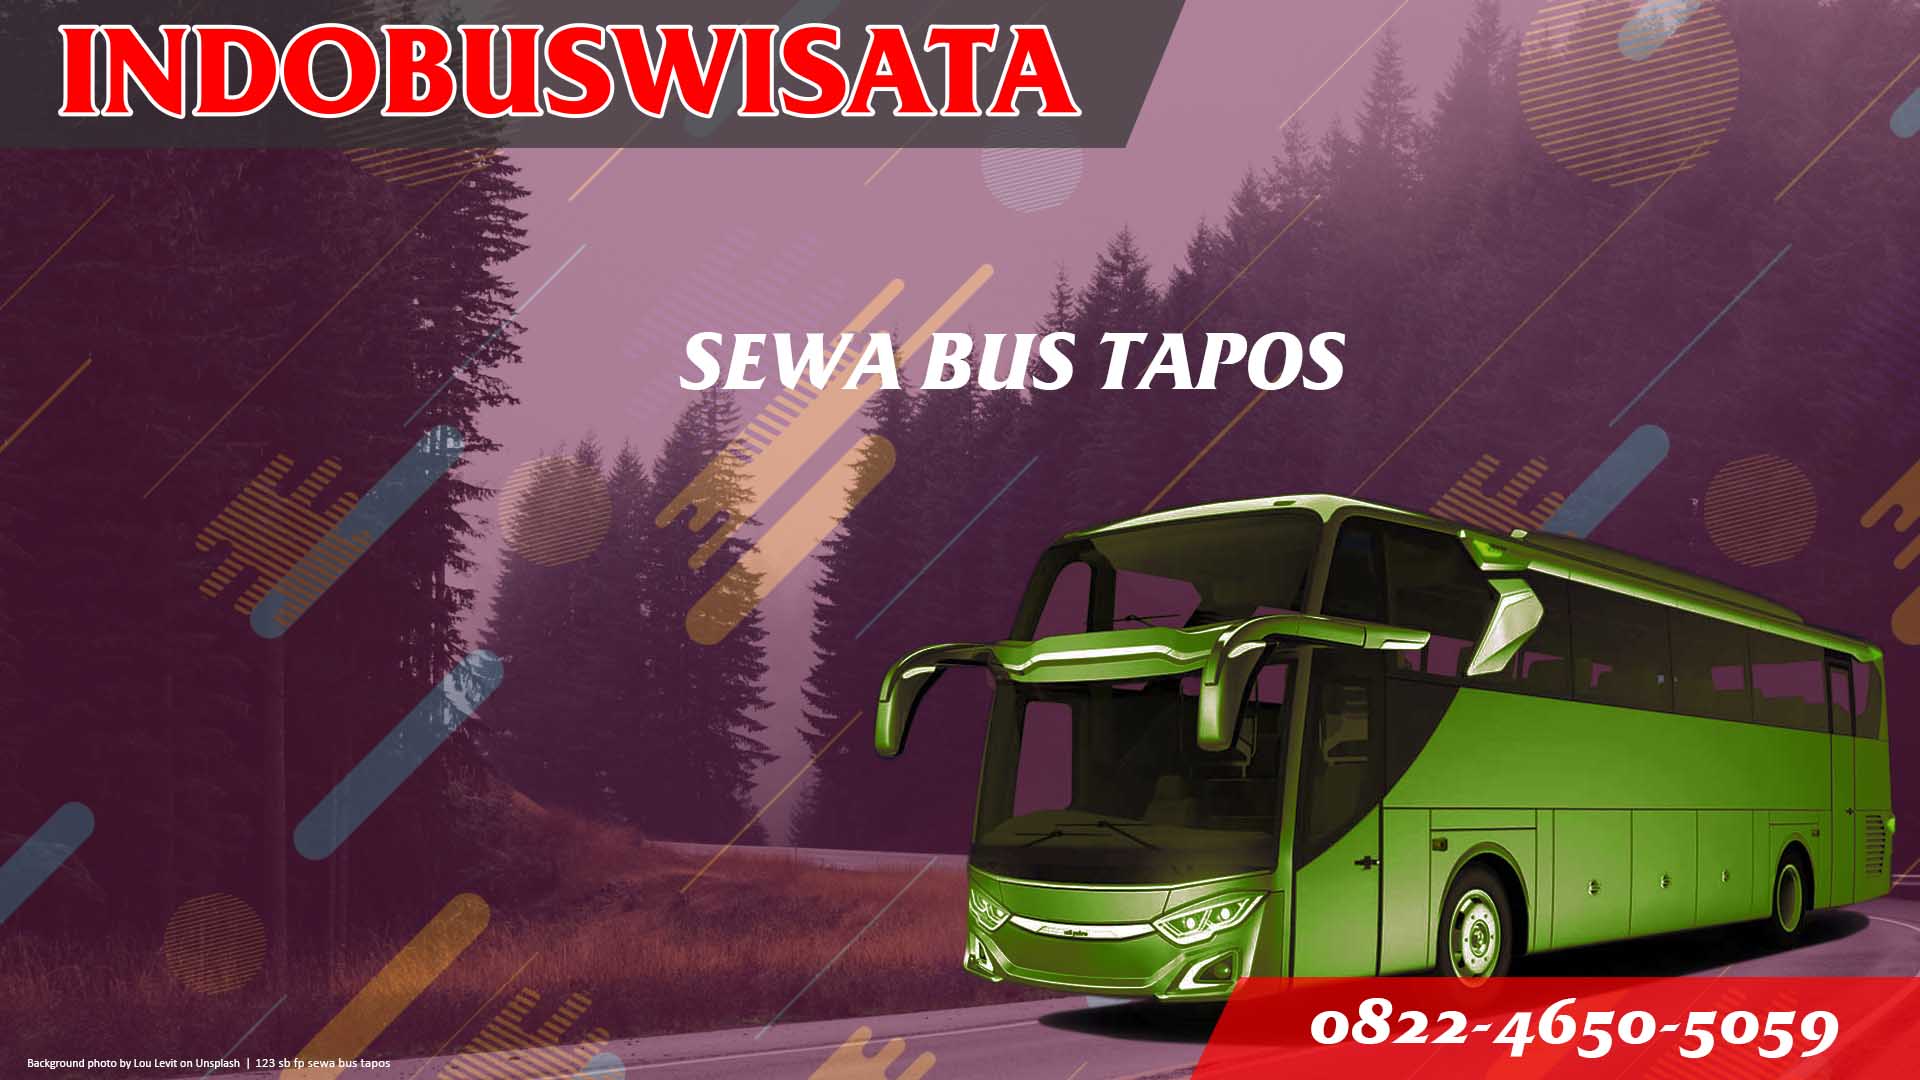 123 Sb Fp Sewa Bus Tapos Jb 3 Hdd Indobuswisata